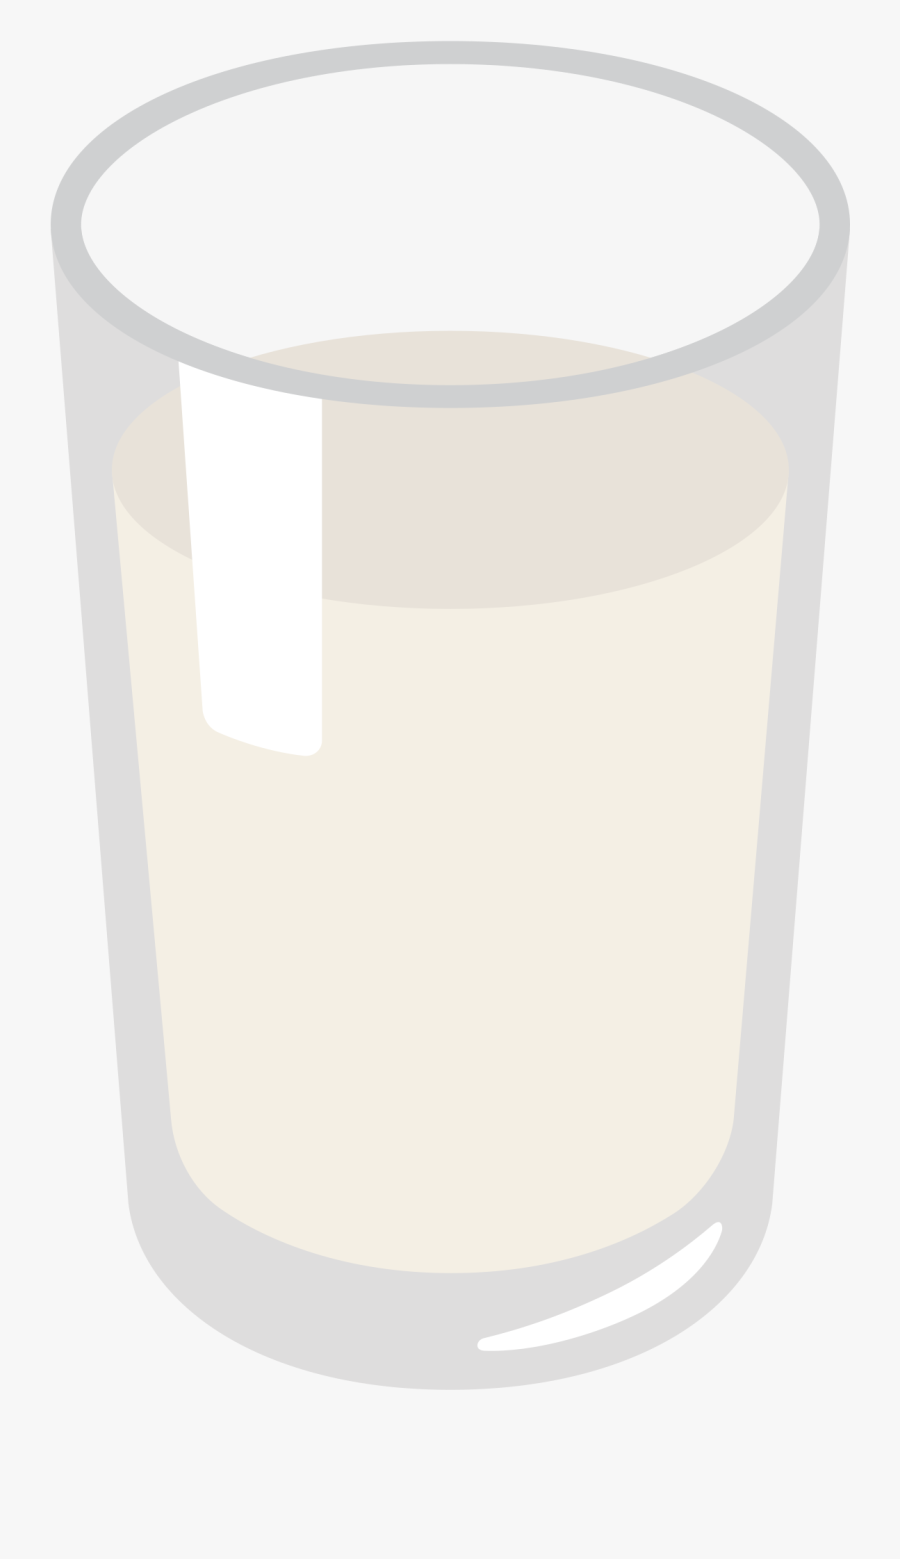 File Emoji U F - Milk Glass Emoji Png, Transparent Clipart